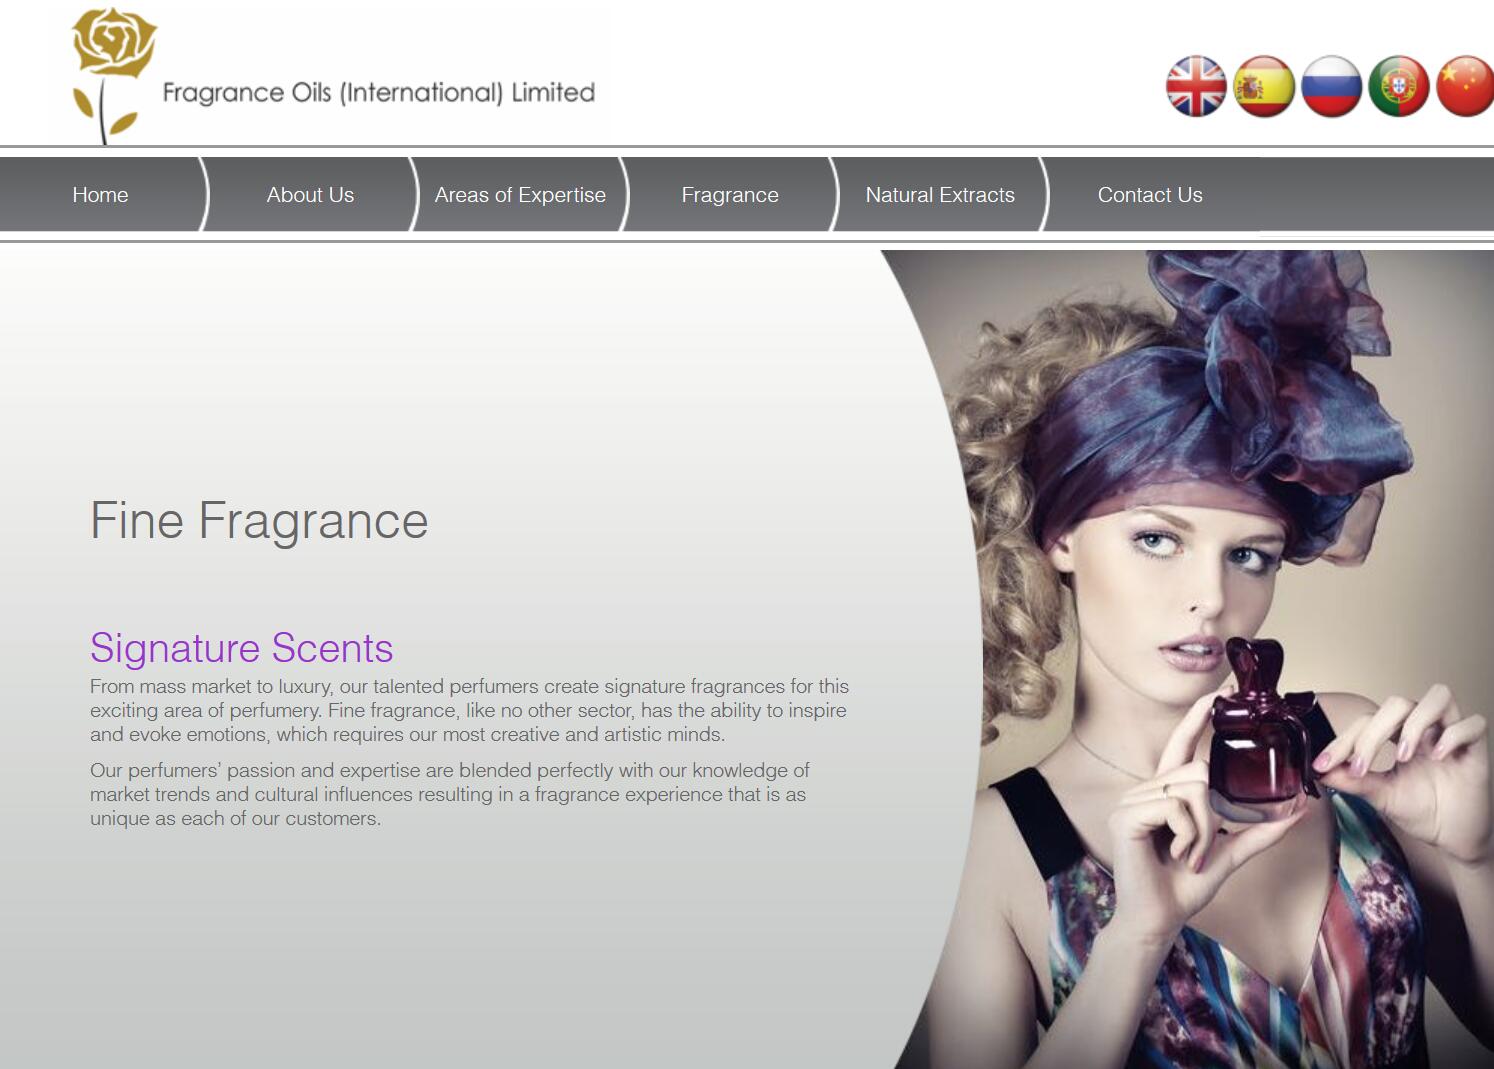 瑞士香水原料巨头 Givaudan 收购英国香水制造商 Fragrance Oils